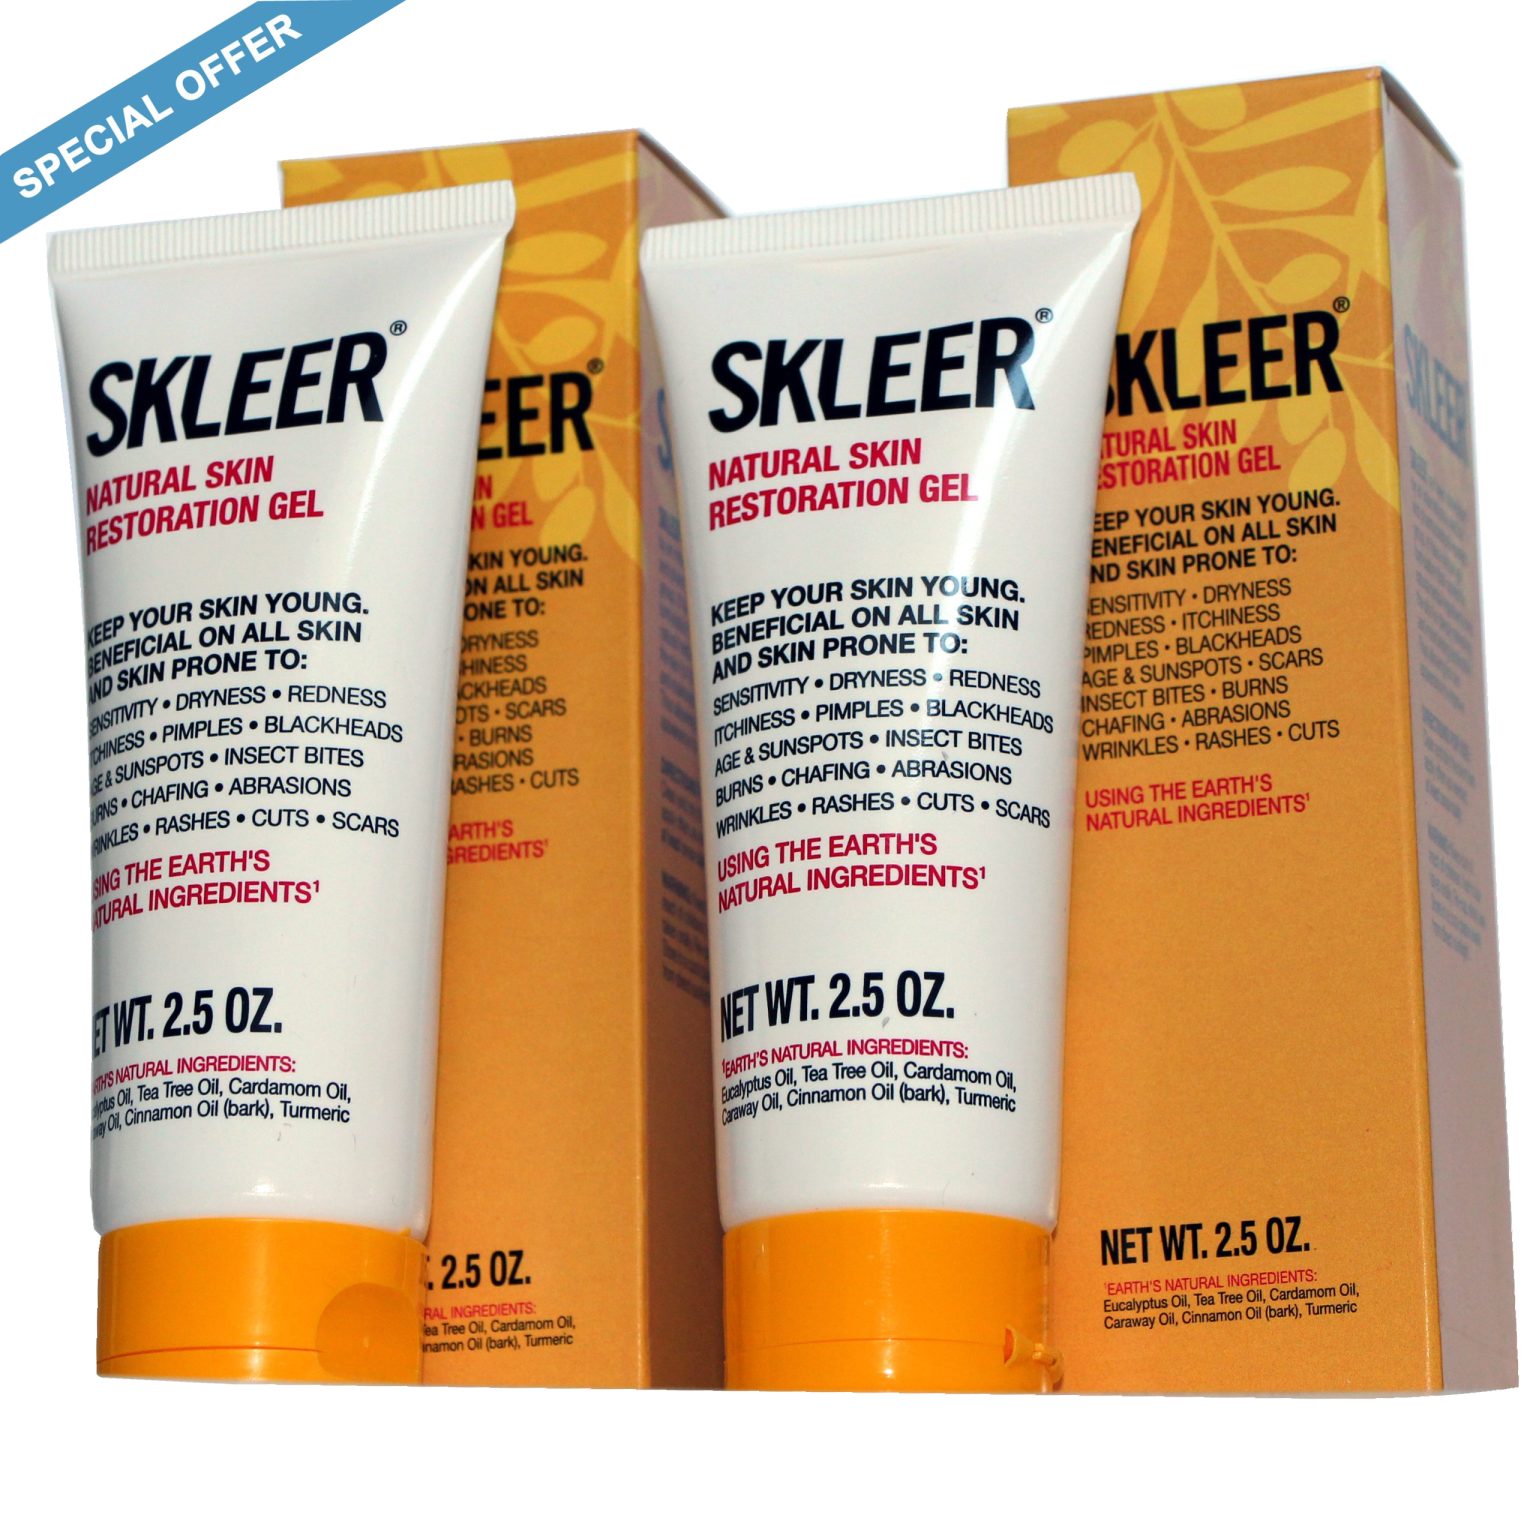 SKLEER Skin blemish remover - SKLEER